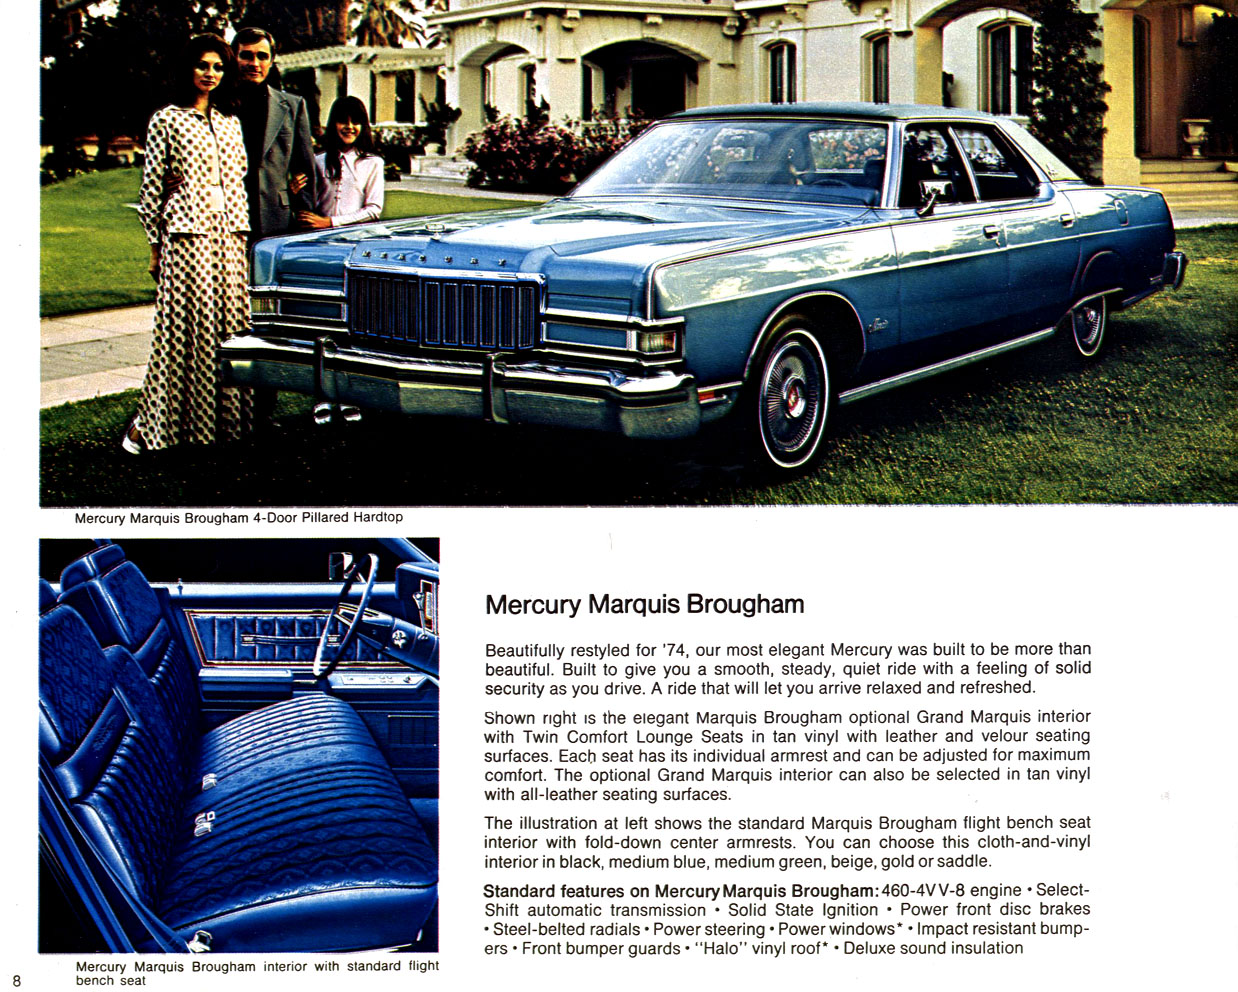 1974_Lincoln-Mercury-08